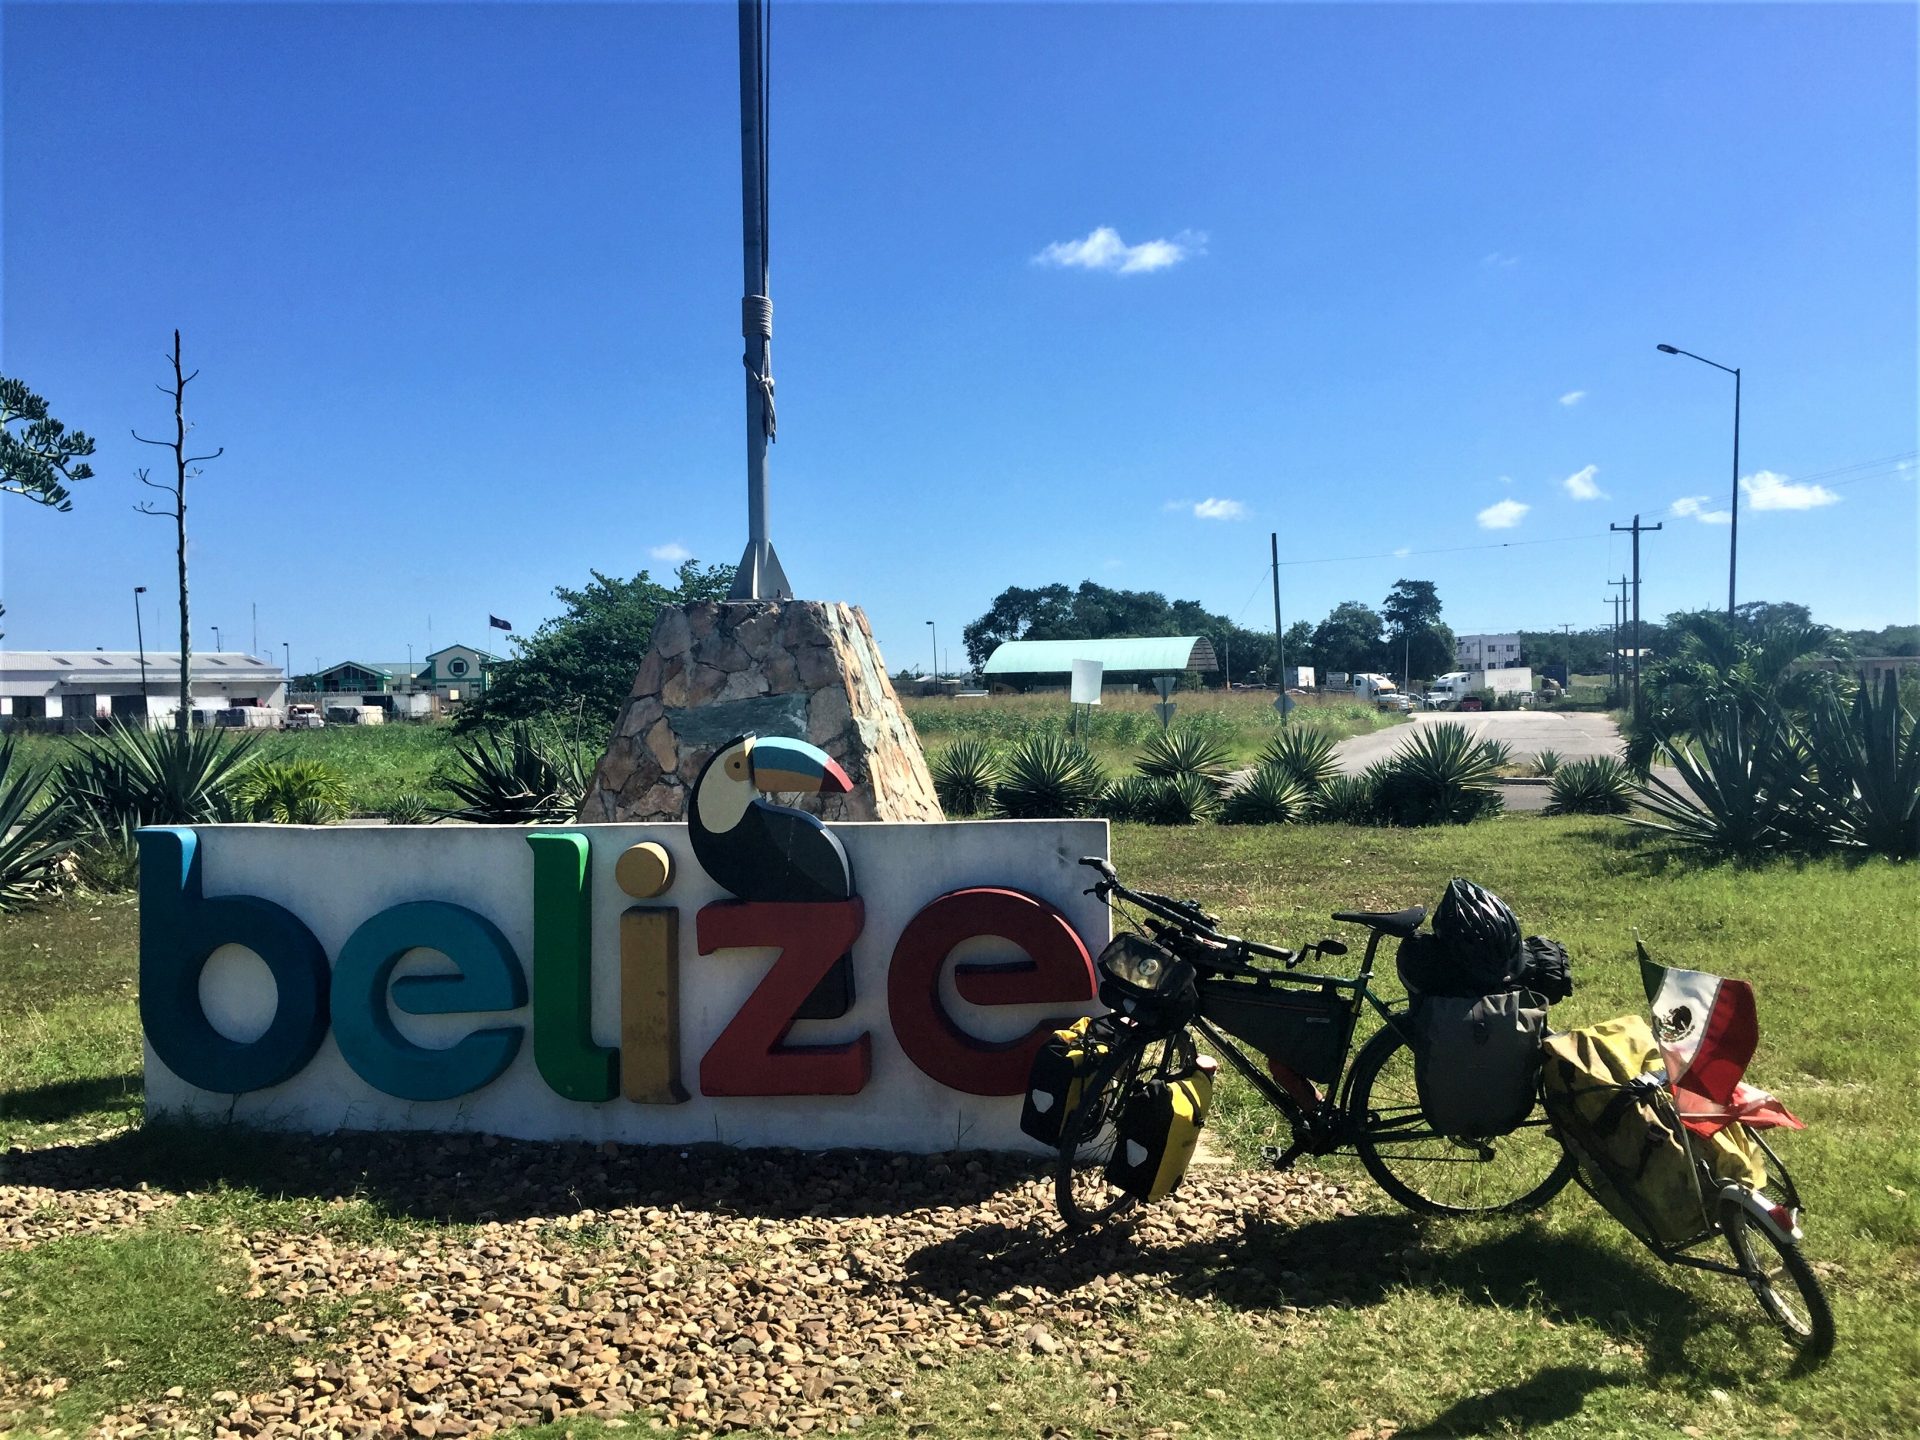 Belize Part 1 (Nov 23 to 26)